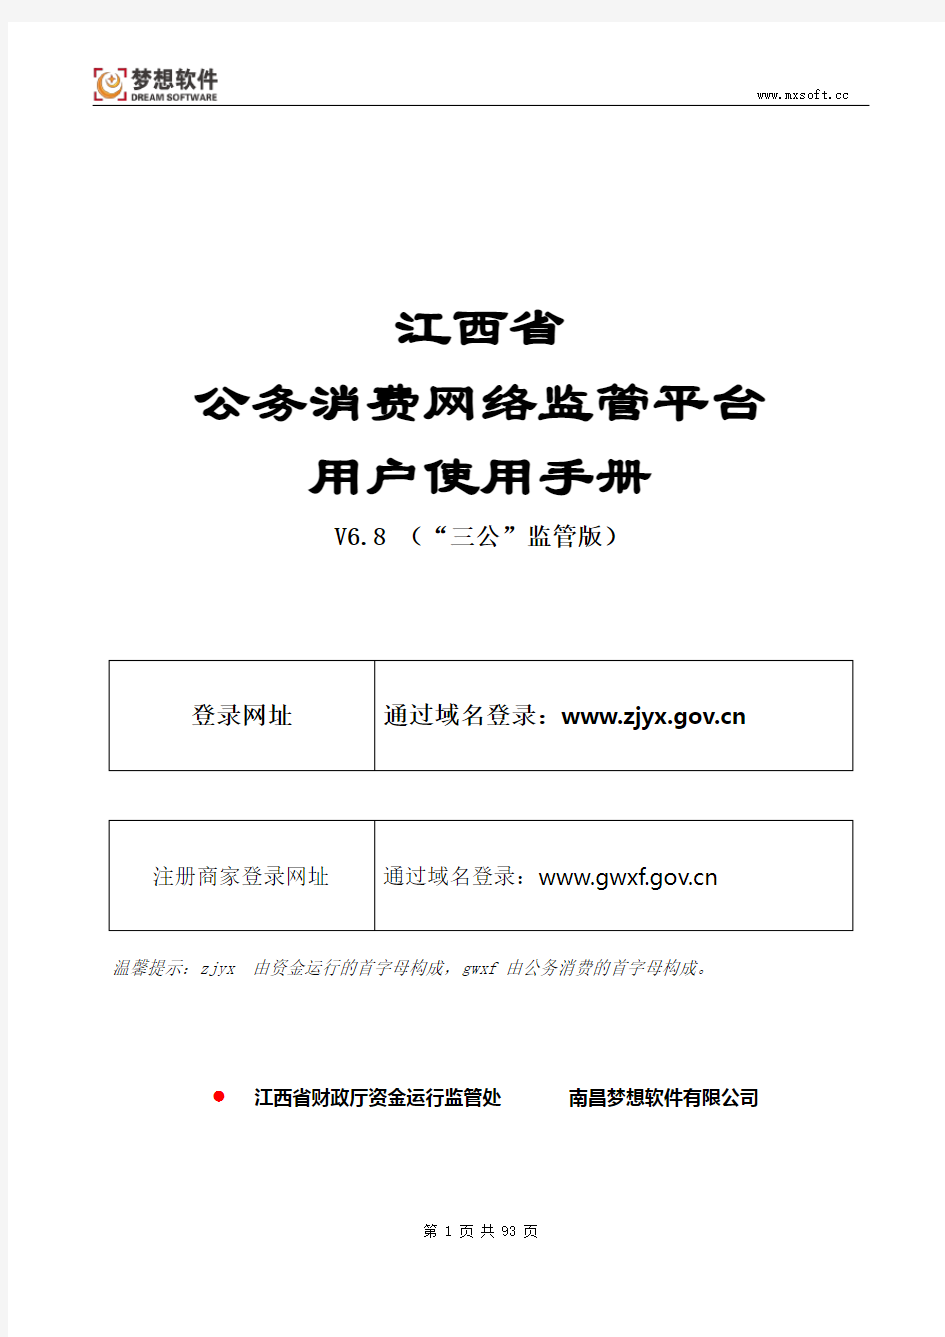 江西省公务消费网络监管平台操作手册V6.8(三公监管版)